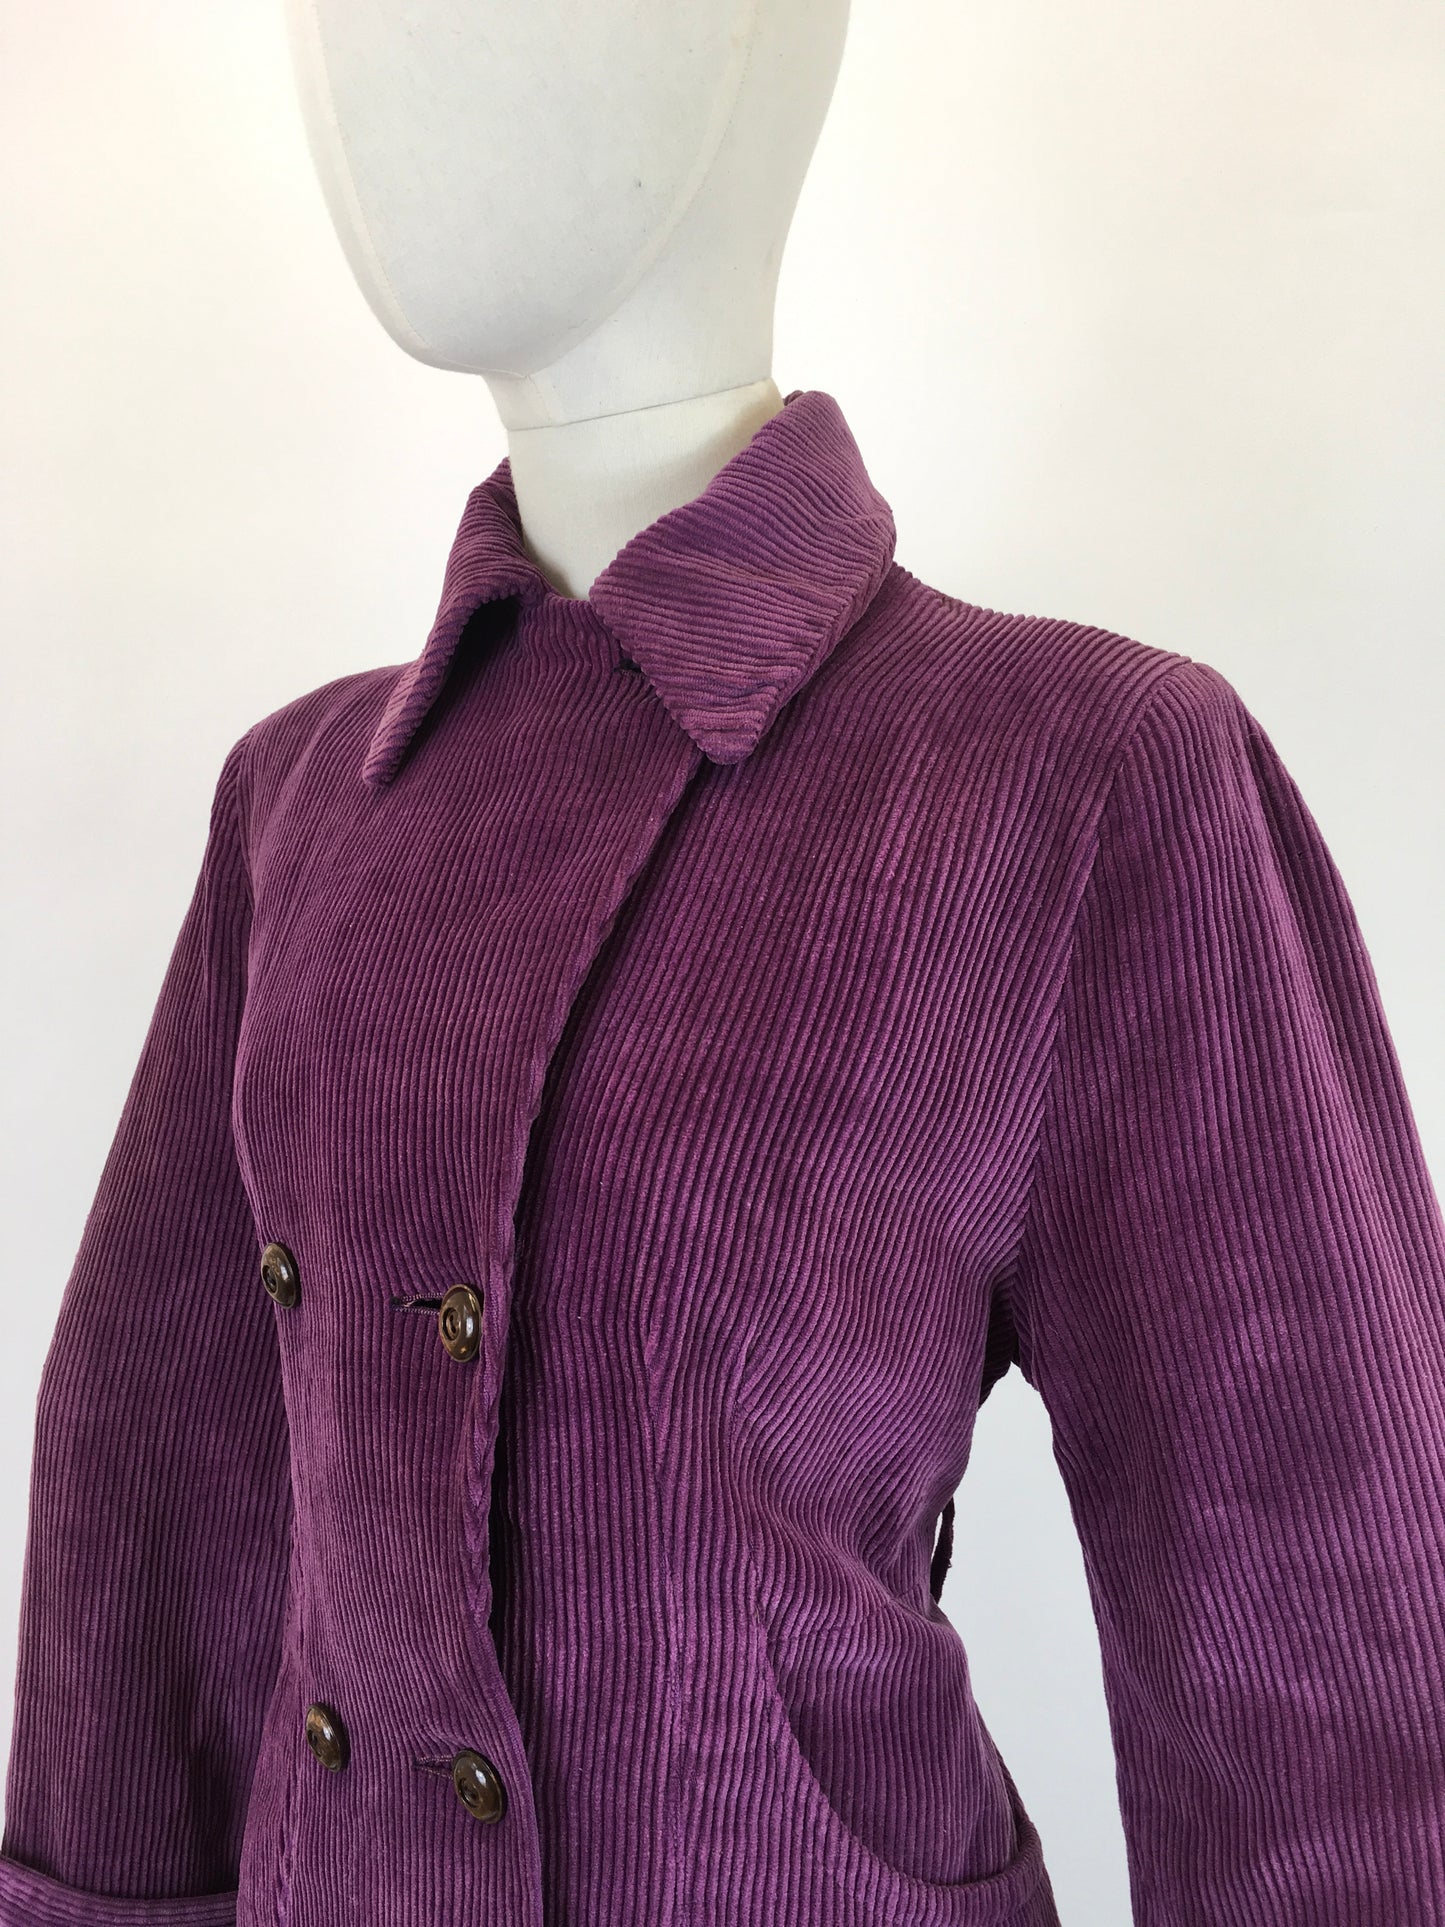 Original Stunning 1940’s Fine Needlecord Coat - In A Divine Rich Purple Colour